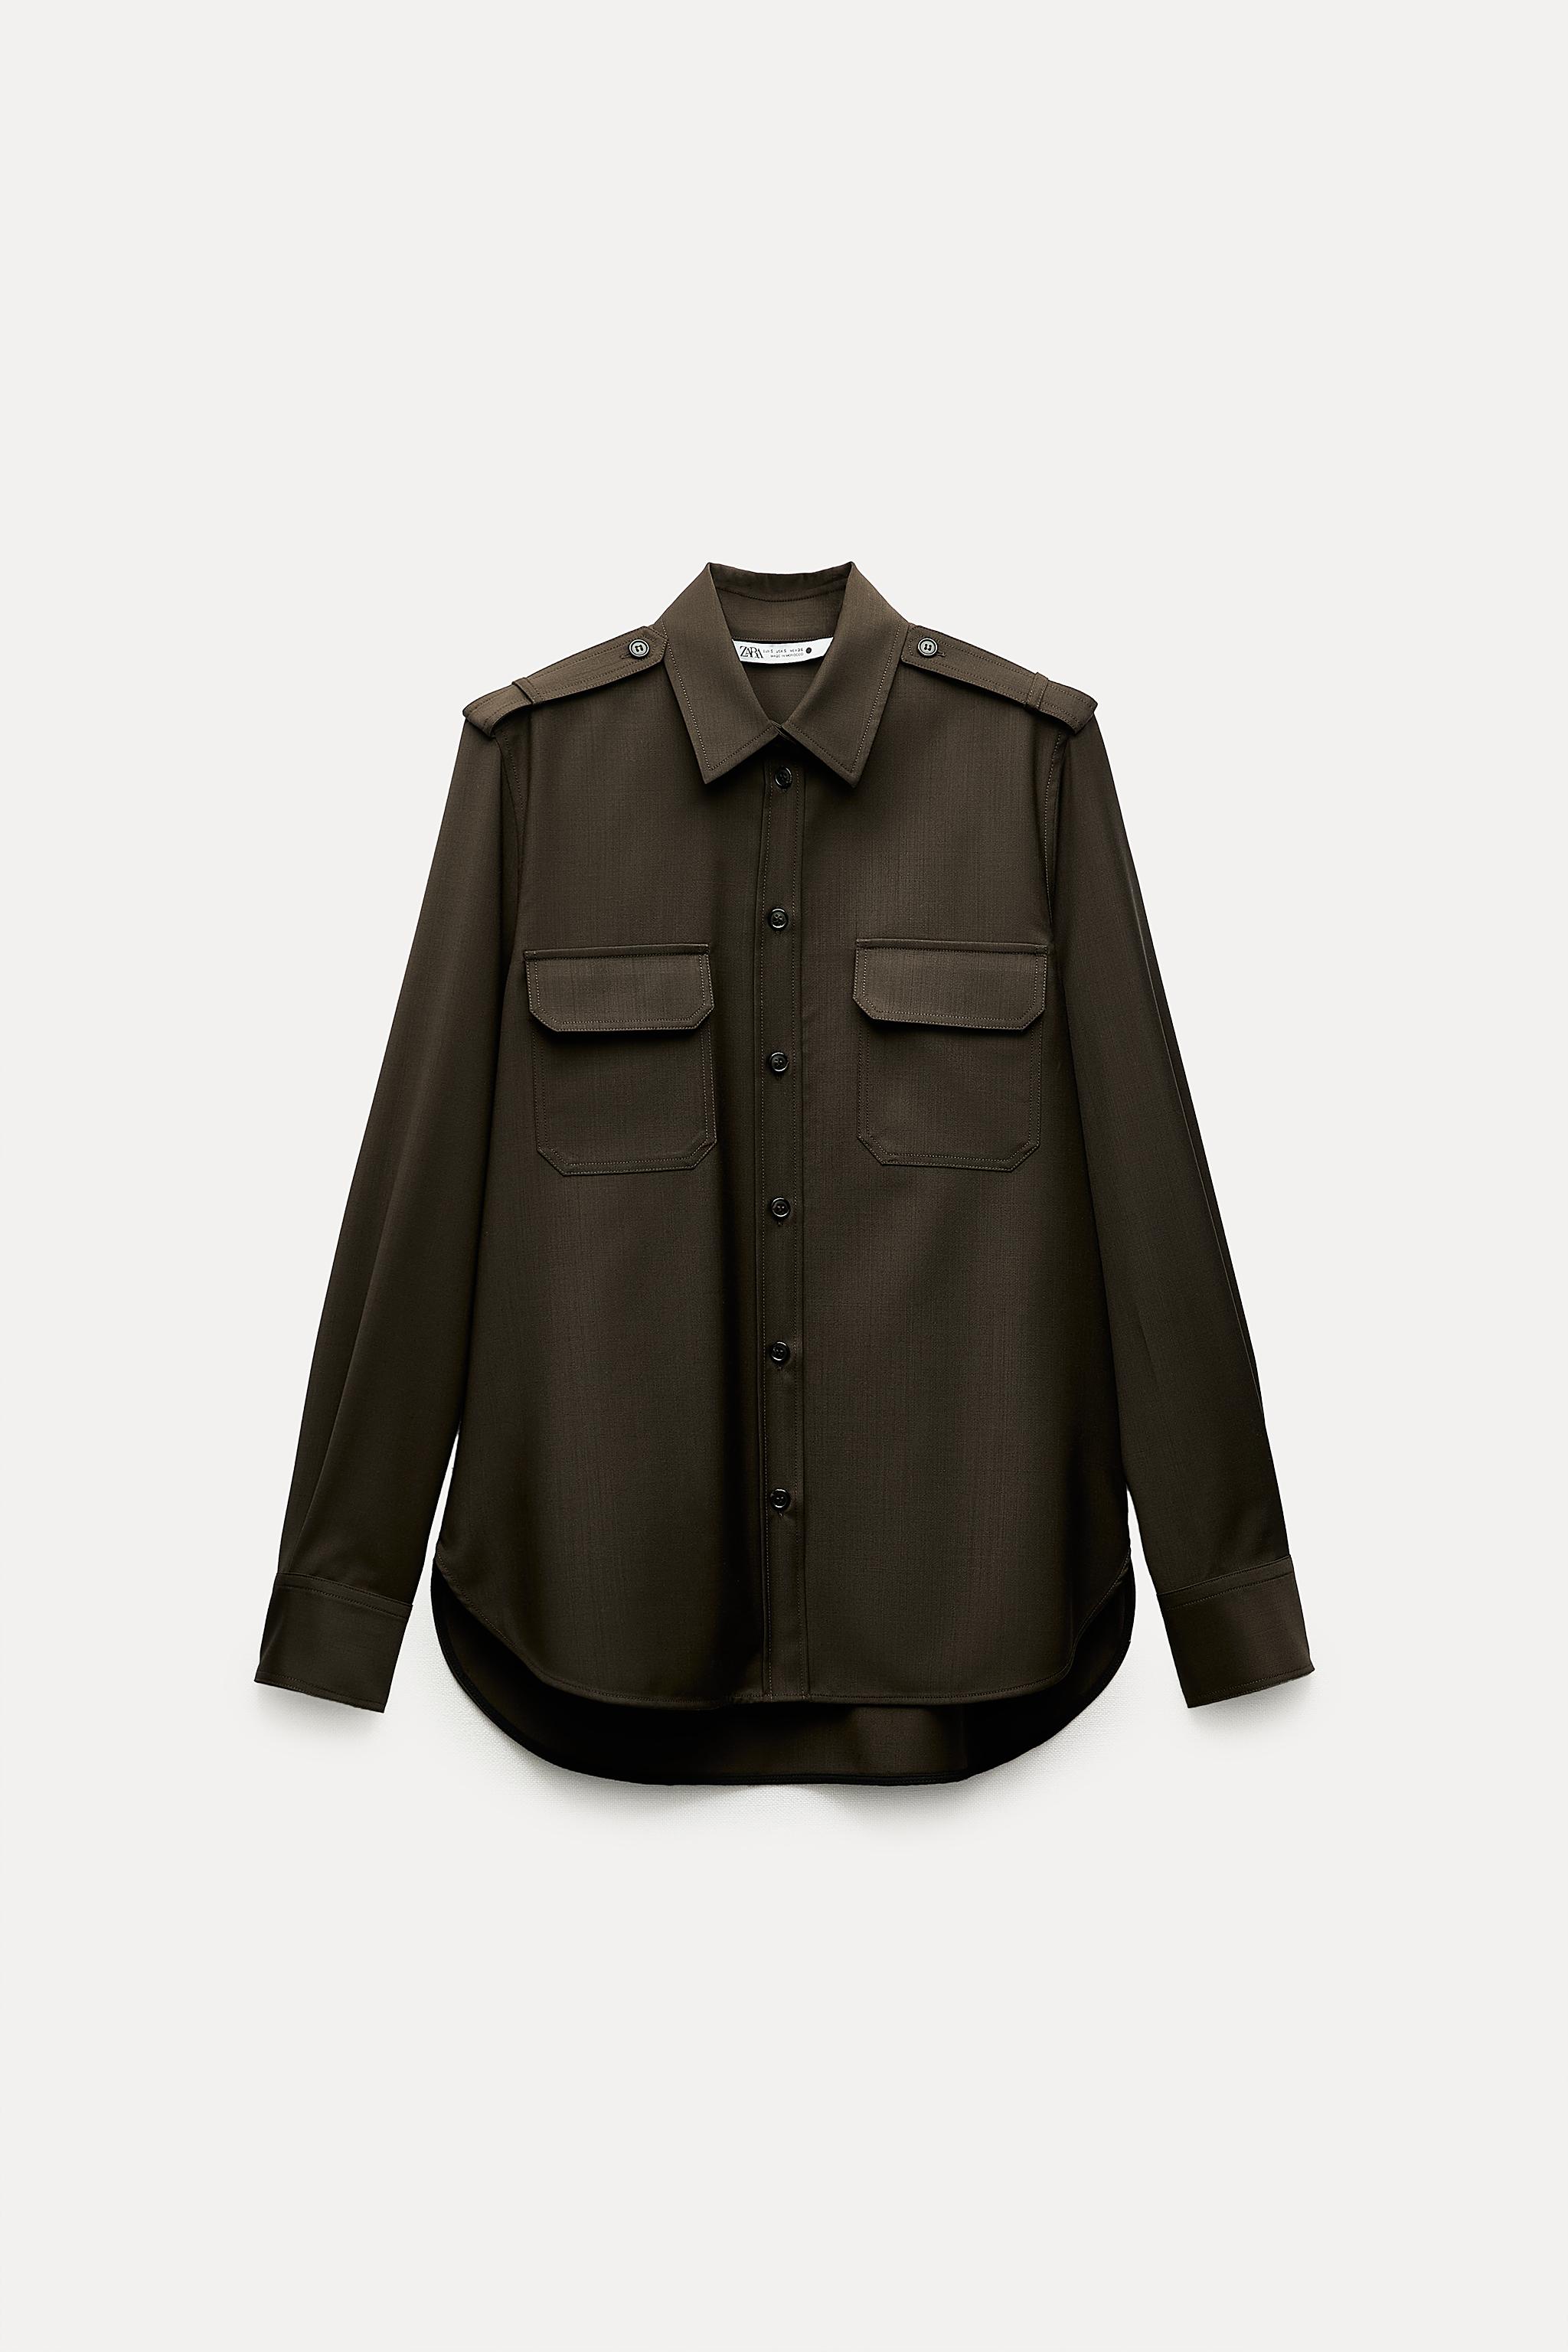 ZW COLLECTION ウール100% カーゴシャツ - ダークカーキ | ZARA Japan